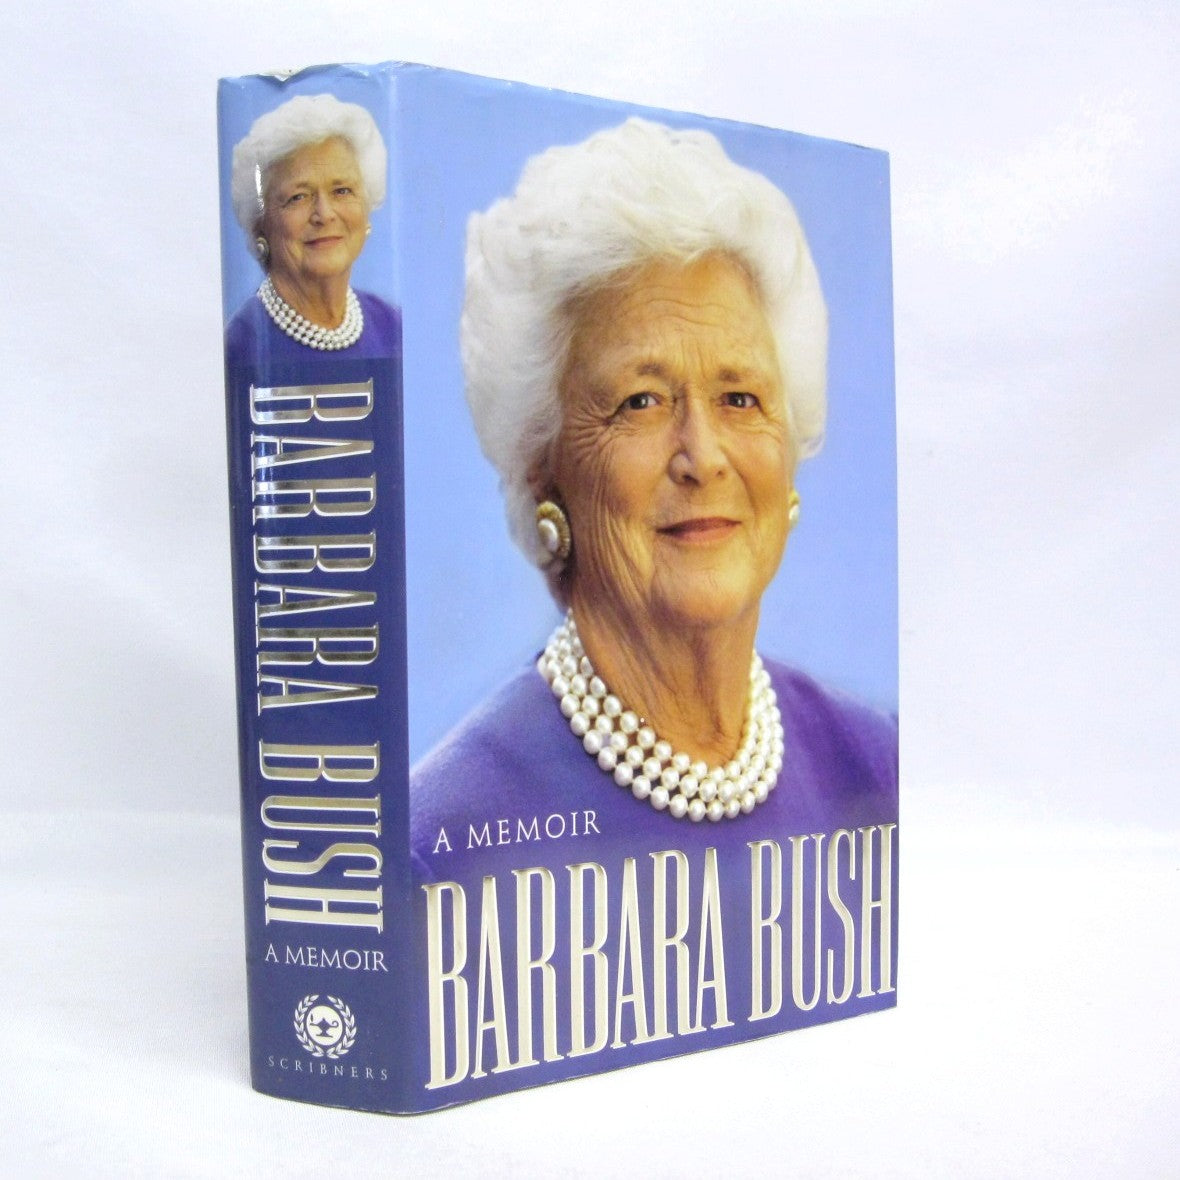 A Memoir by Barbara Bush